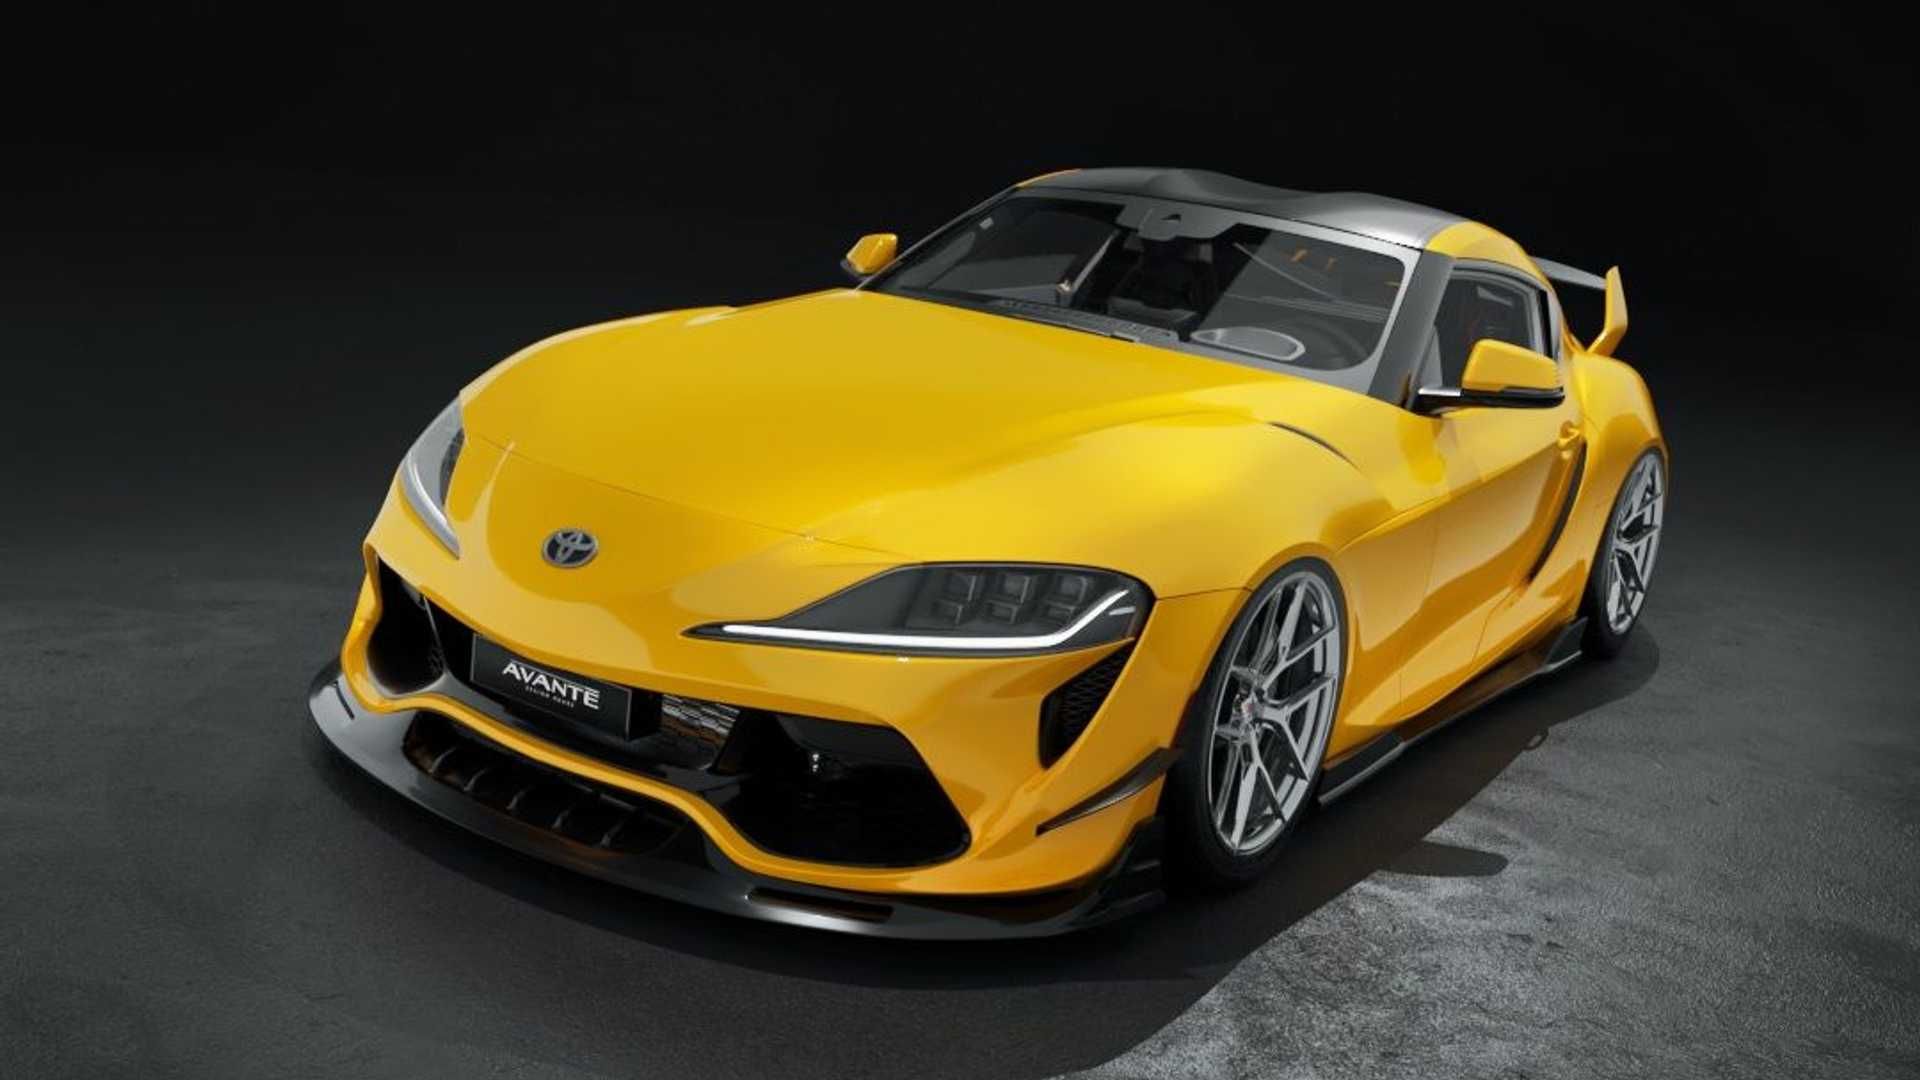 2021 Toyota Supra by Avante Design